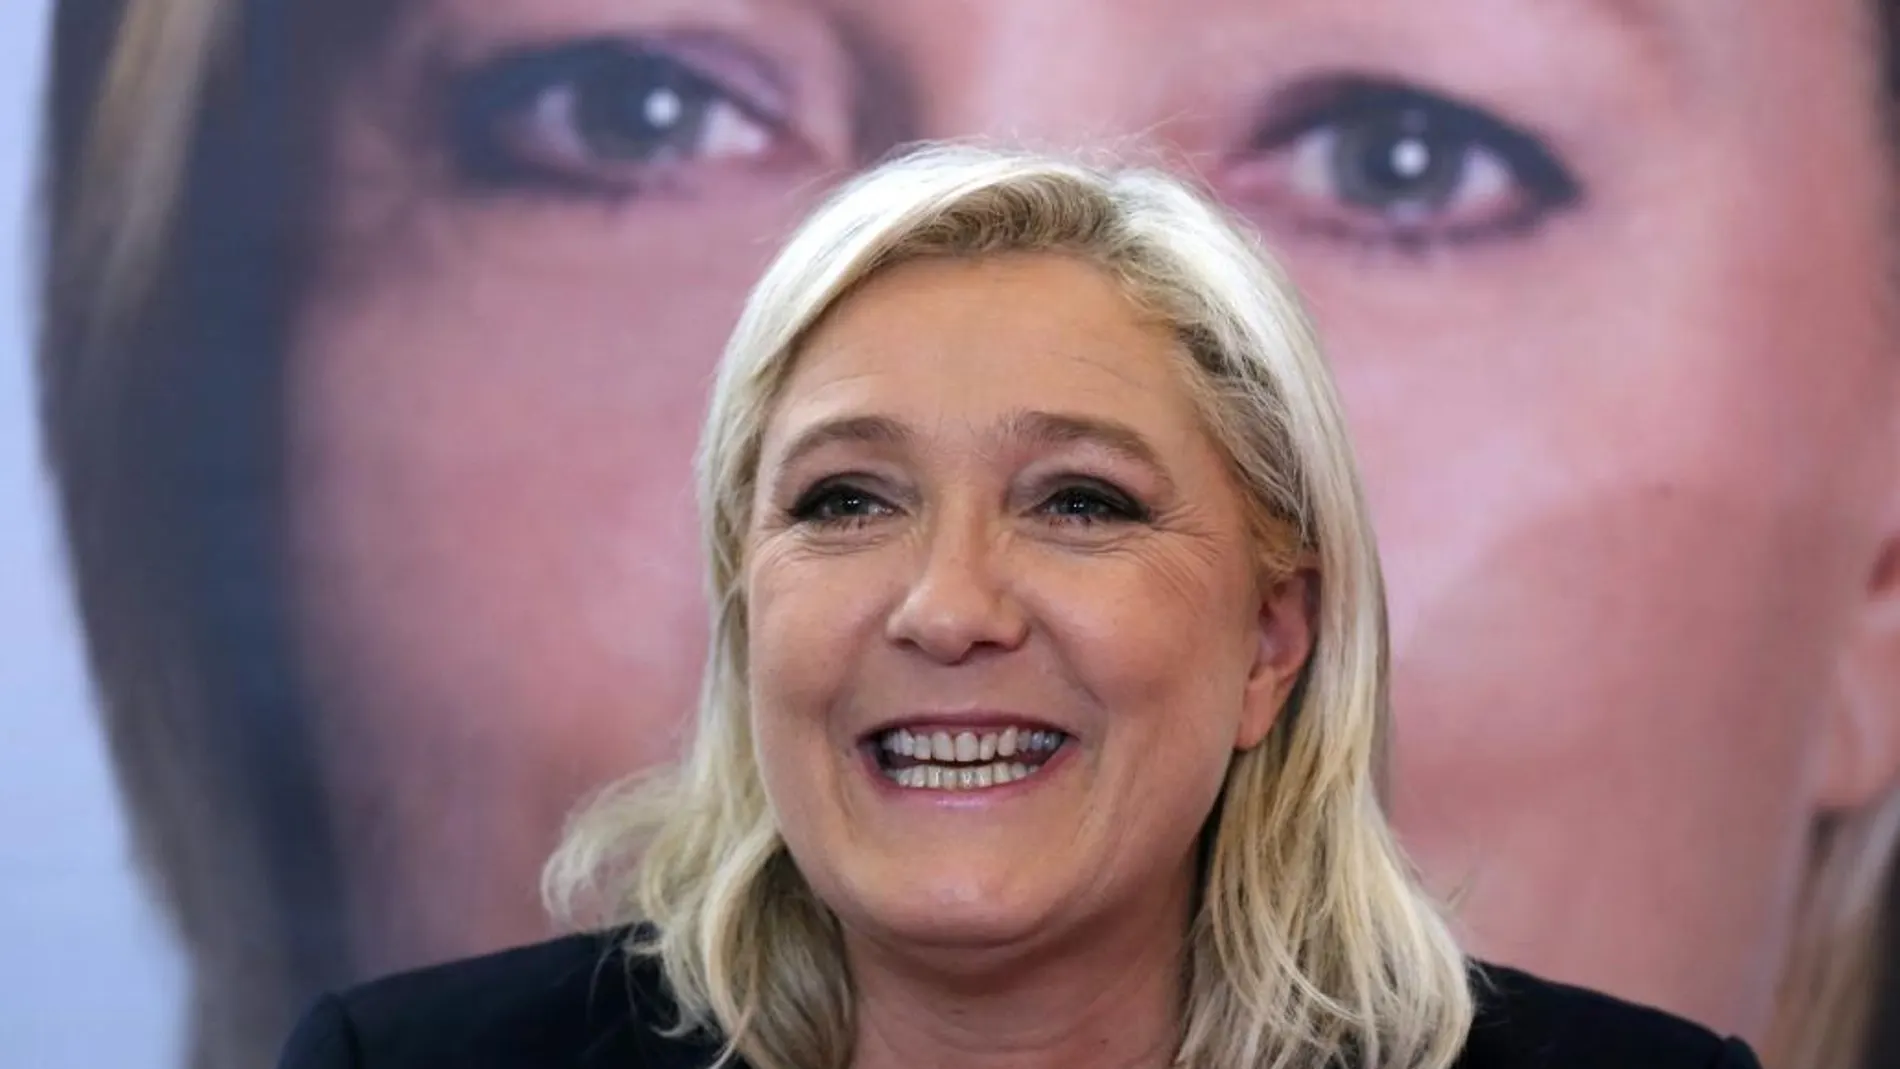 La líder de Frente Nacional, Marine Le Pen